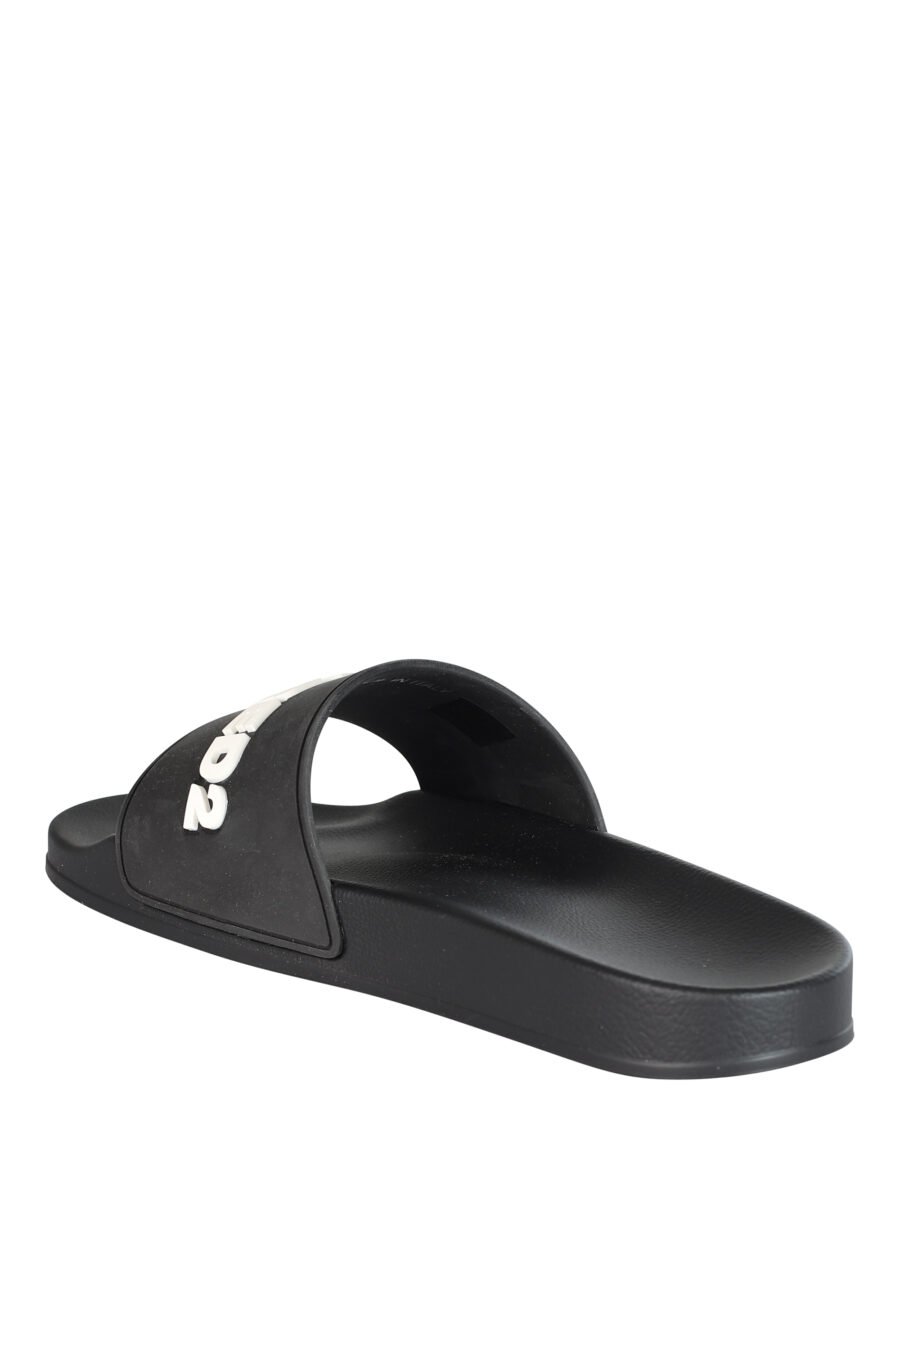 Black flip flops with white rubber maxilogo - 8055777073773 4